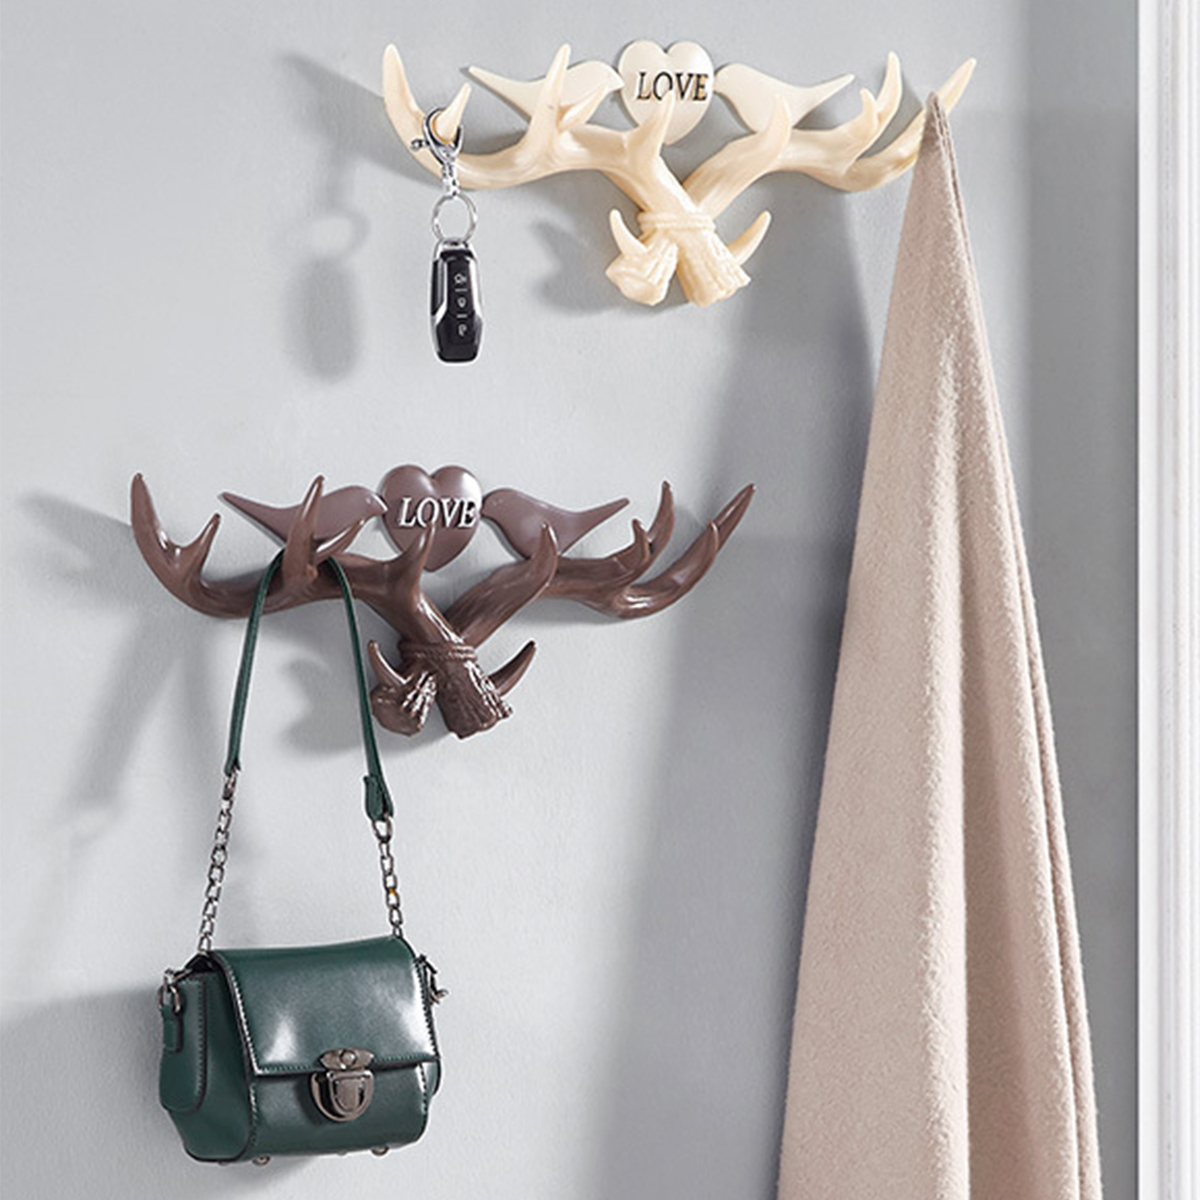 Love-Vintage-Deer-Antler-Wall-Hanger-Decoration-Coat-Hook-And-Hat-Rack-4-Color-Holder-1403840-2